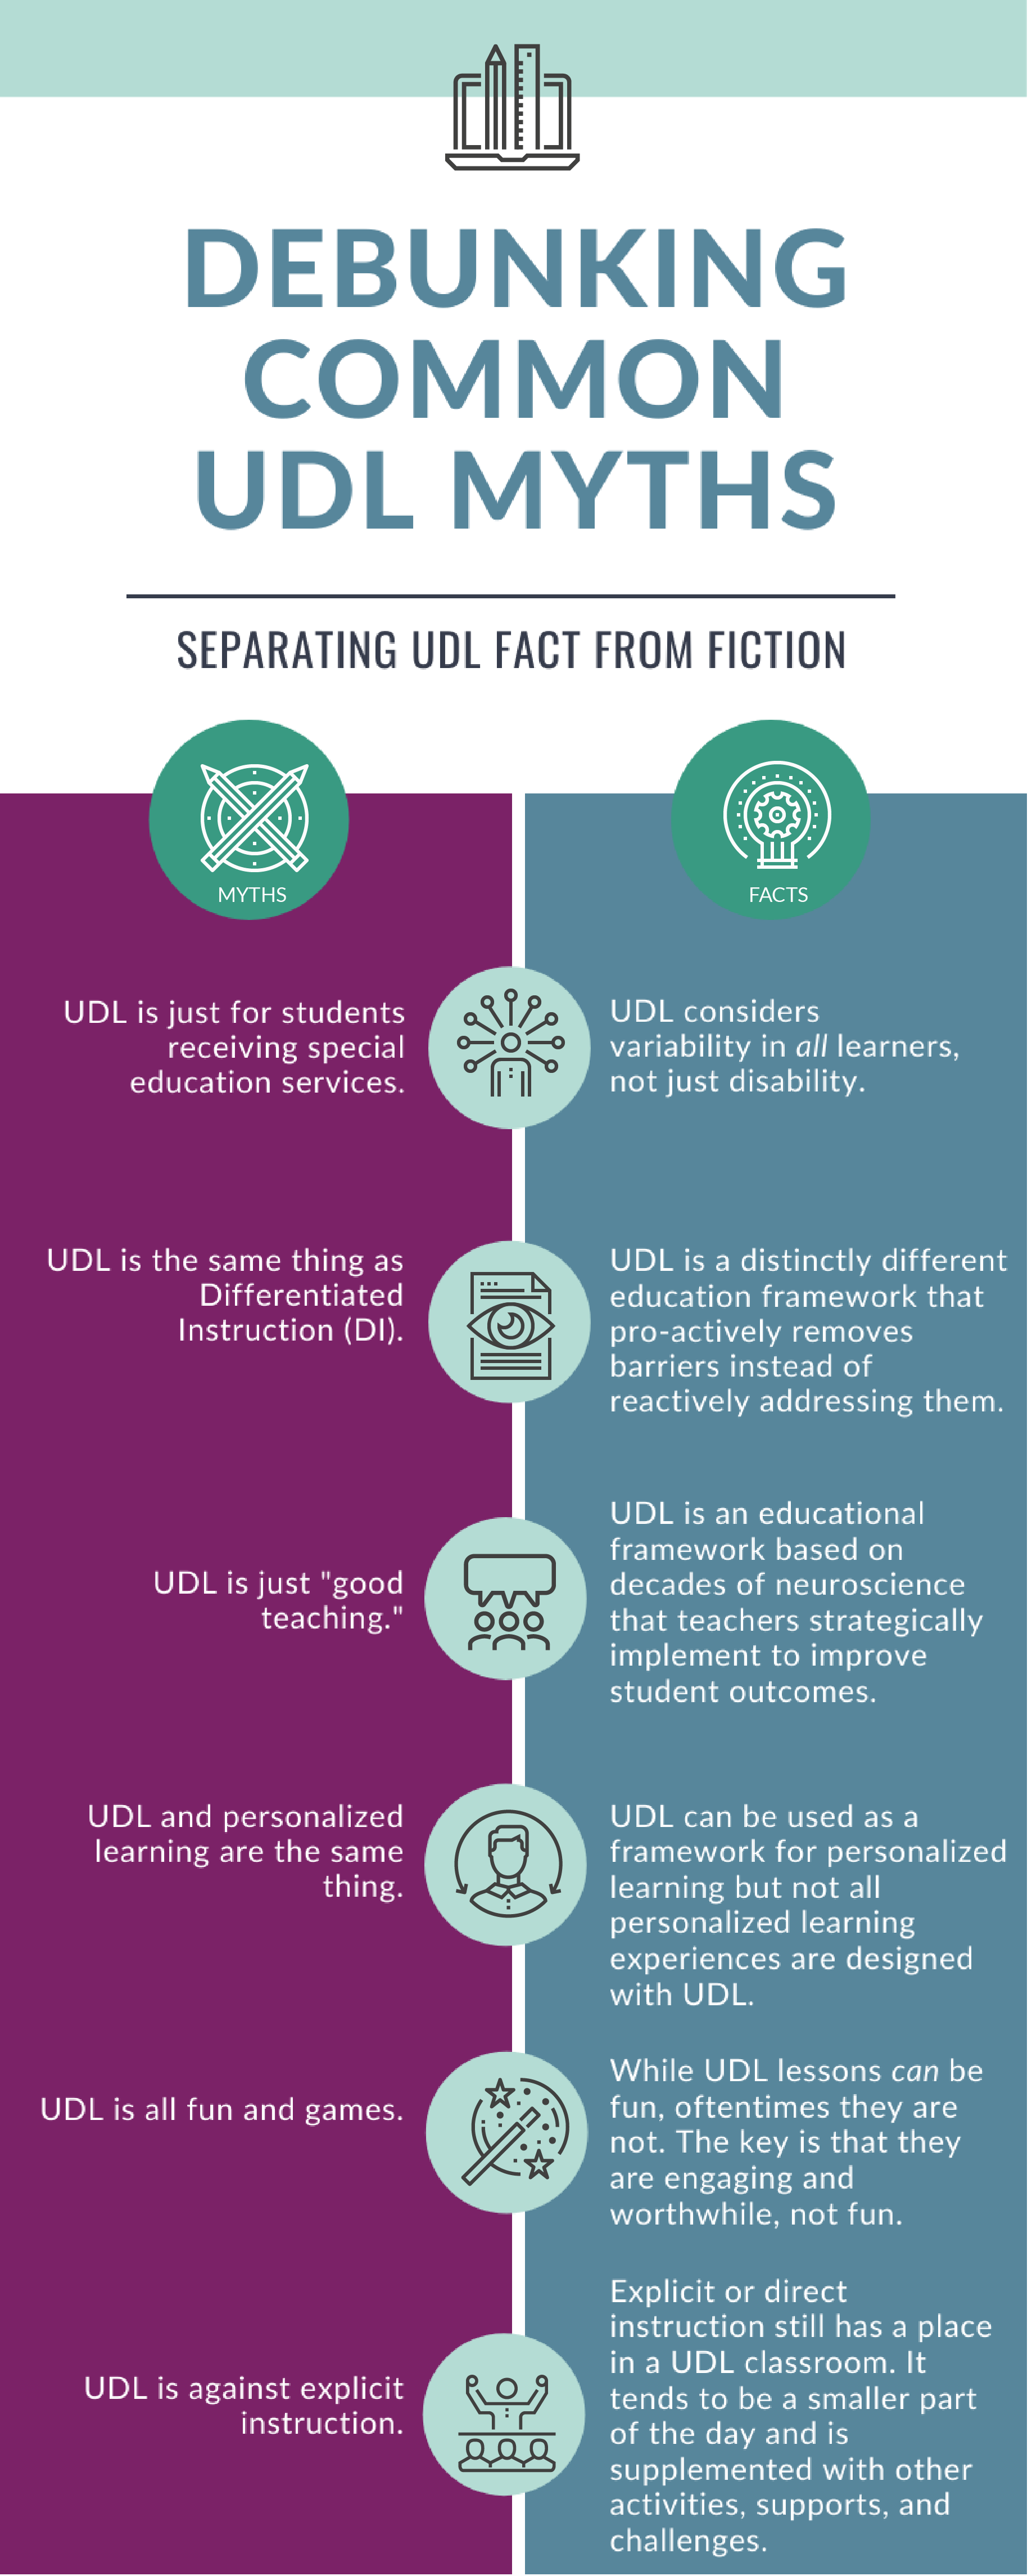 Debunking UDL Myths